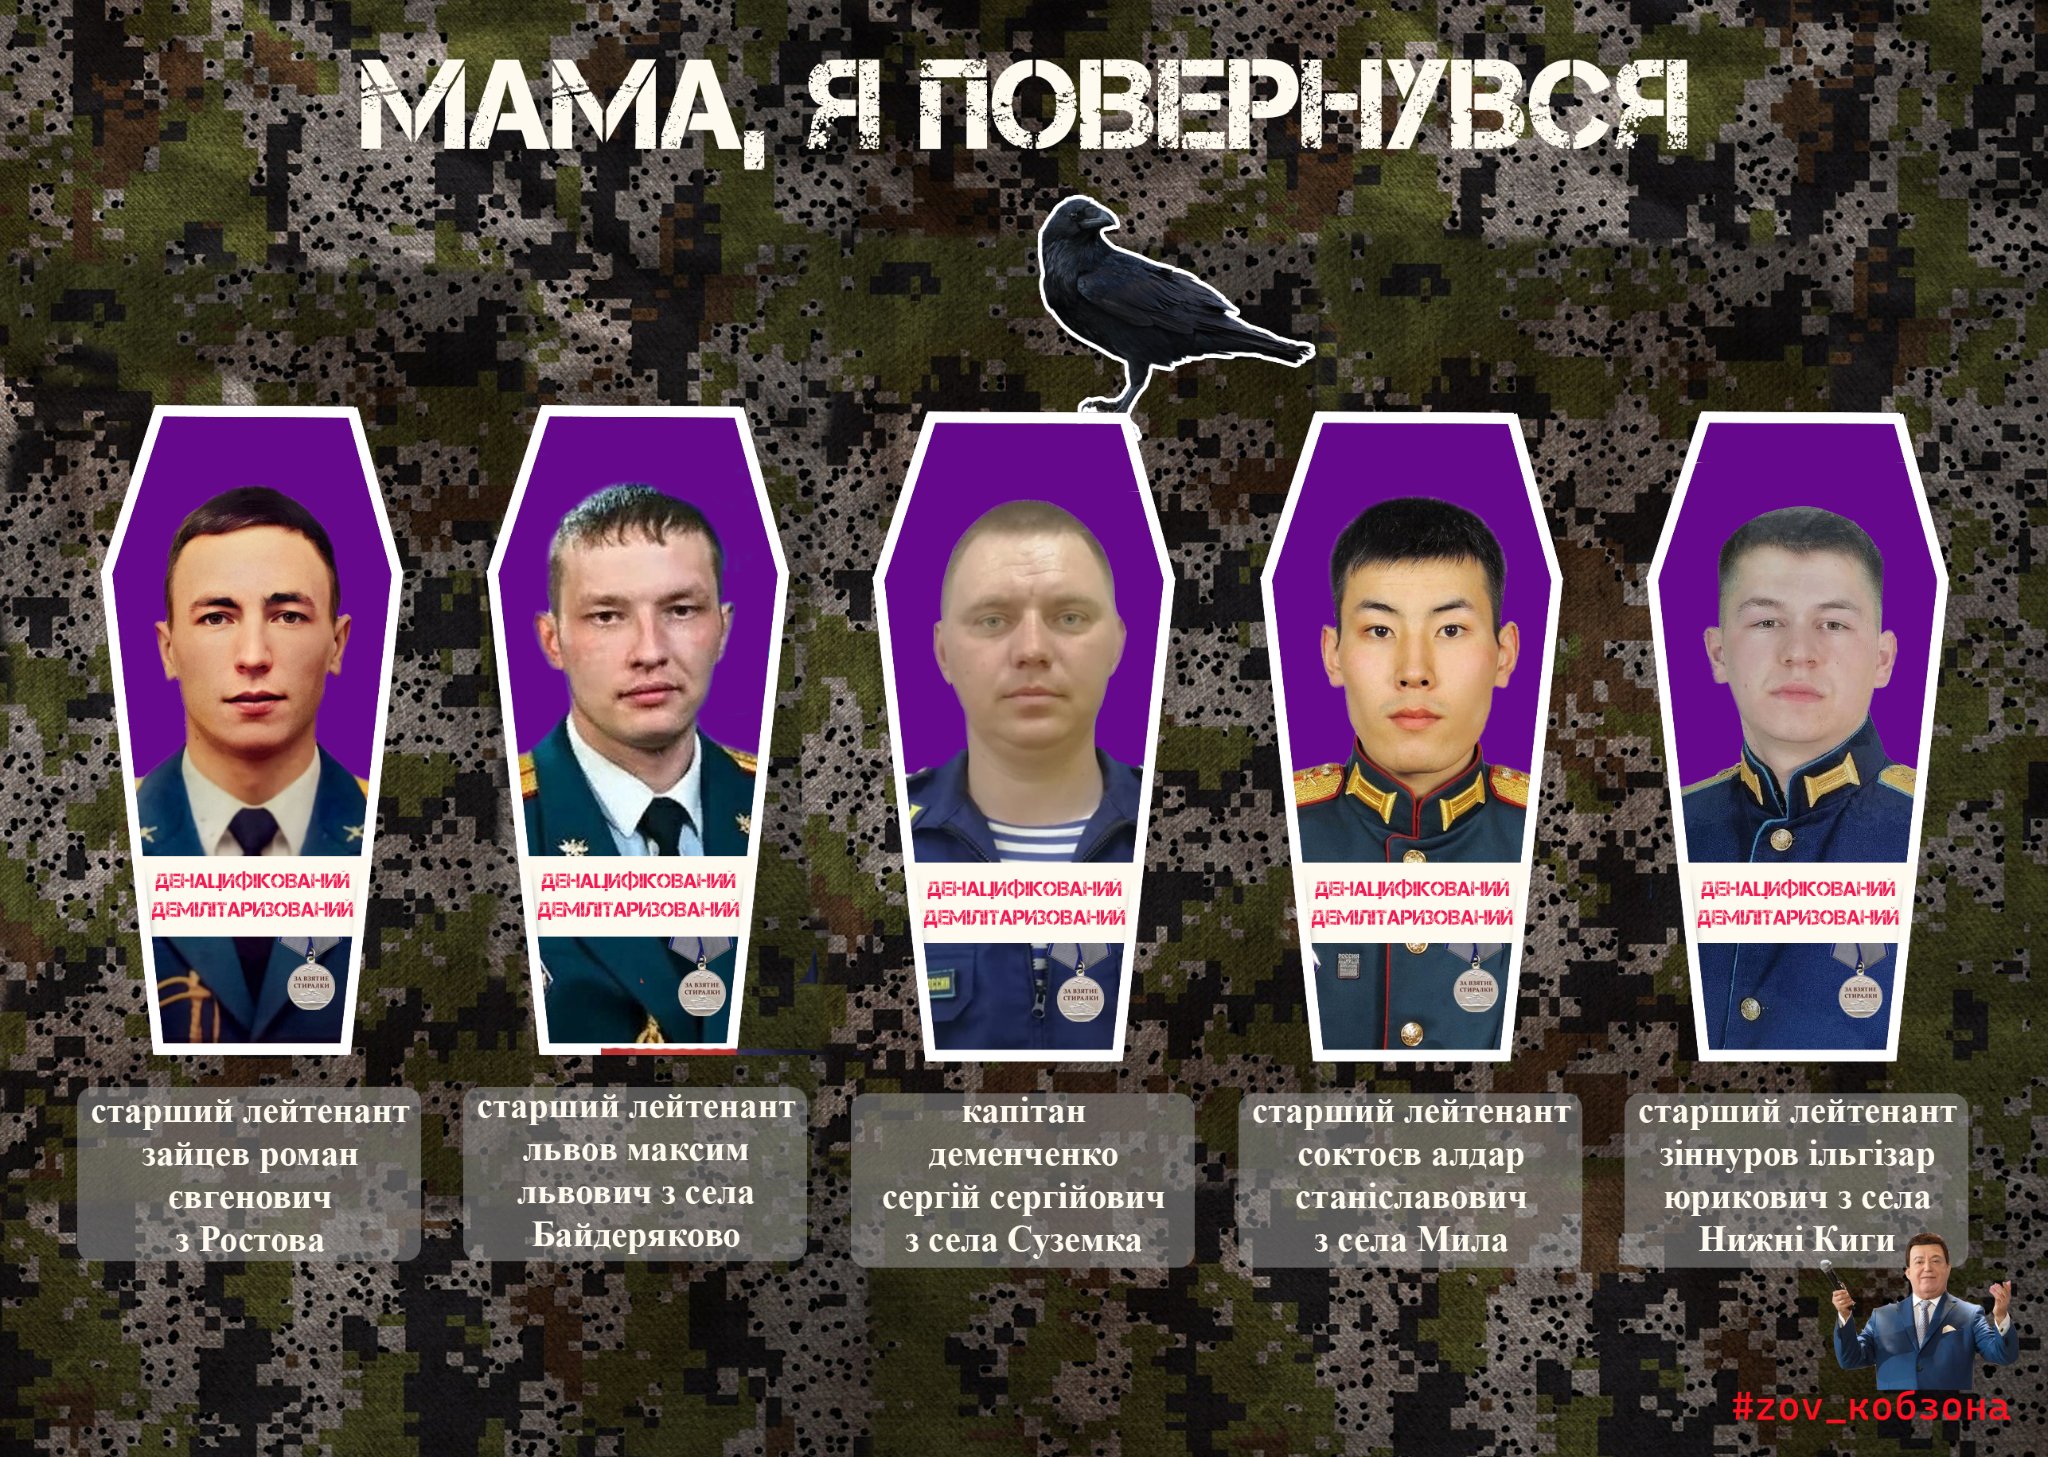  ВСУ уничтожили еще пять офицеров армии оккупантов (ФОТО) - фото 2